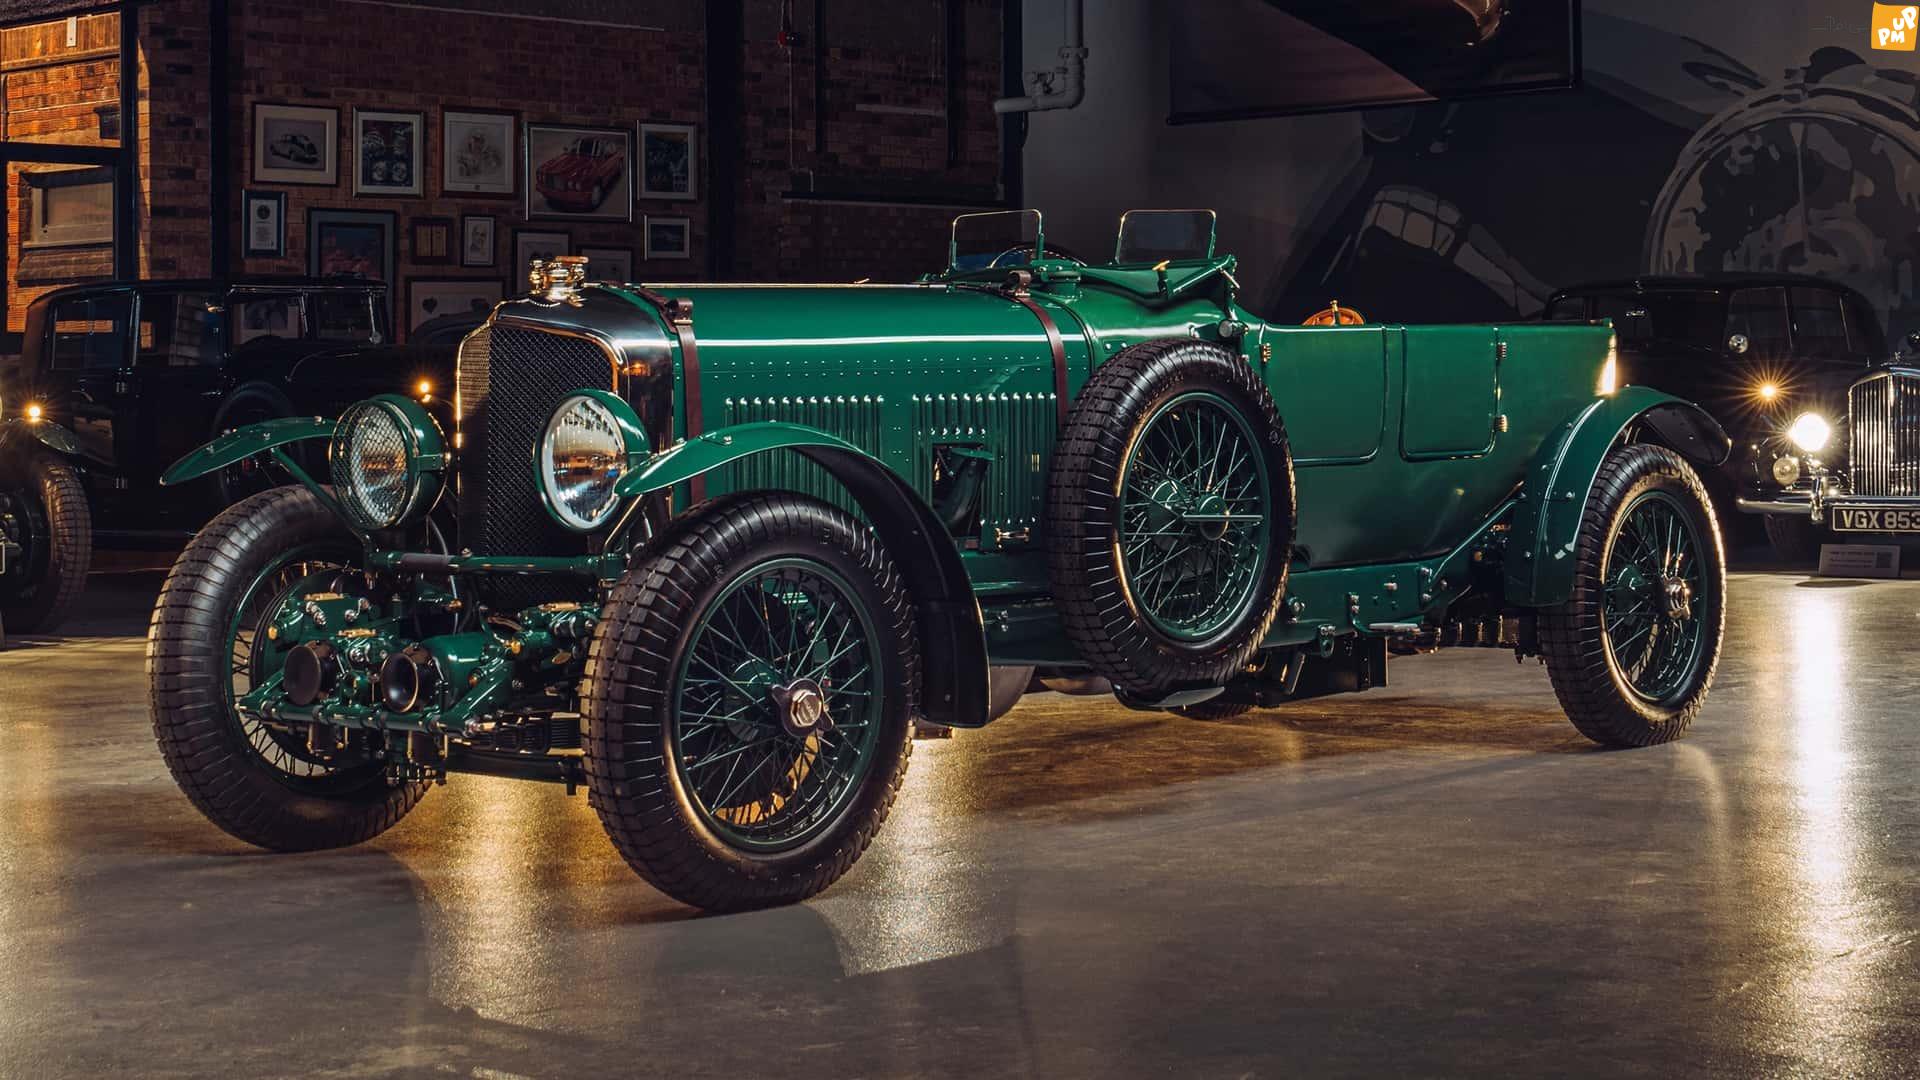 بنتلی خودروی 1930 خود را بازتولید می کند و آن را در جاده می گذارد! / این ماشین 90 ساله بهتره یا ماشین نو؟! (+عکس)